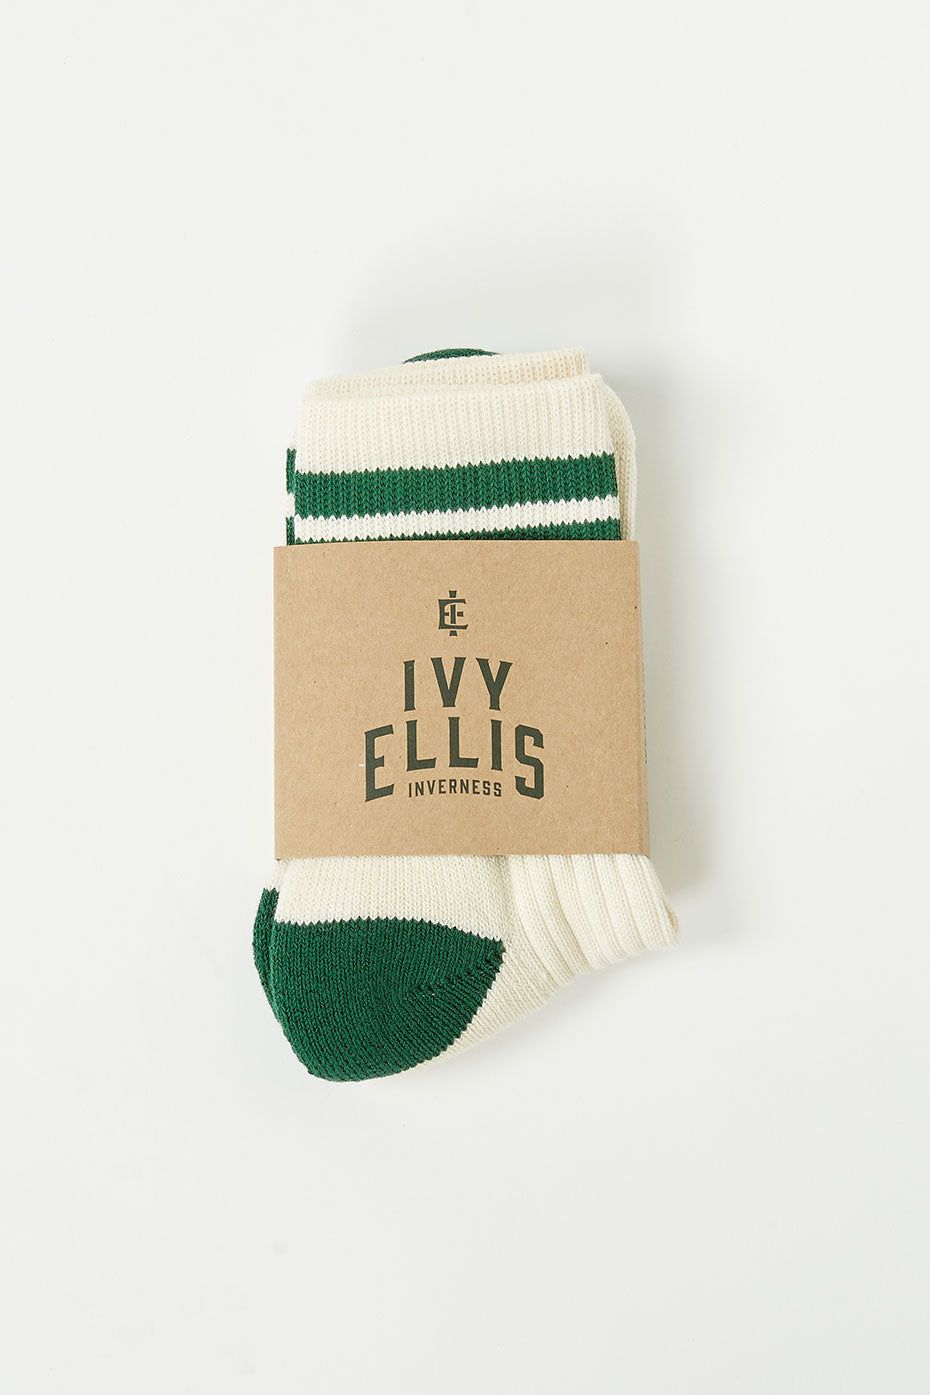 Ivy Ellis Namath Vintage Sport Socks Womens - Trouva | Trouva (Global)